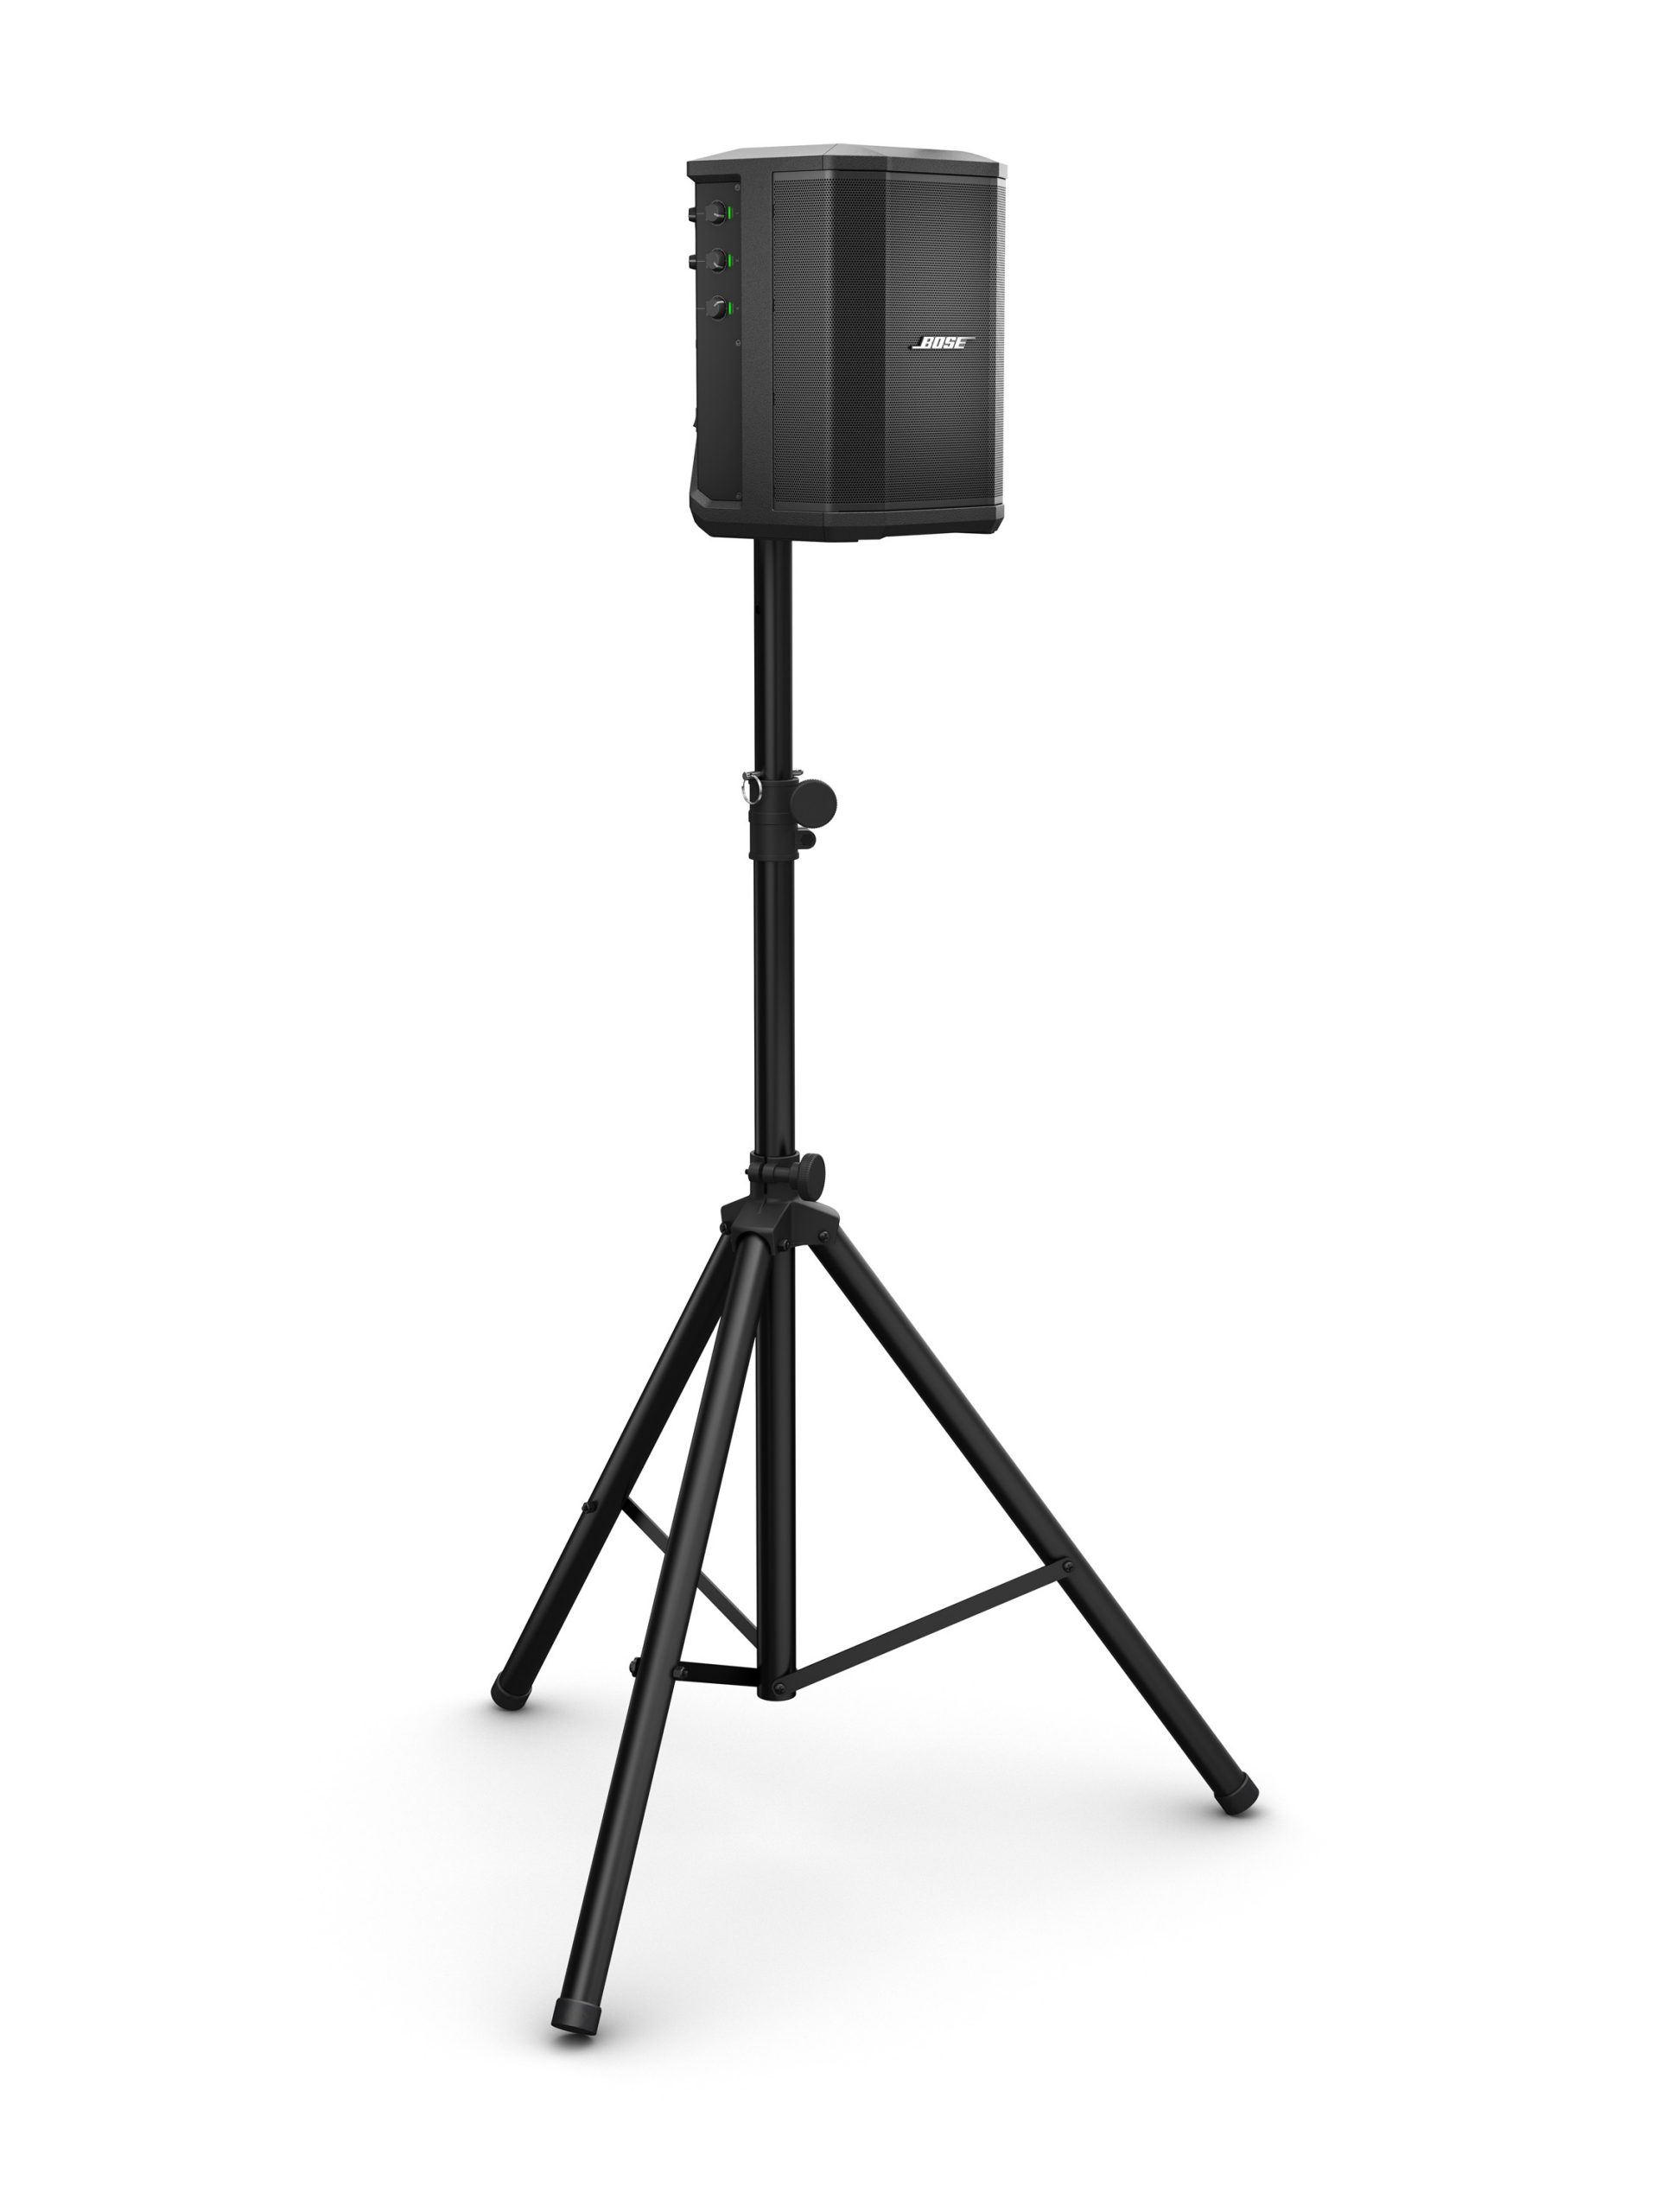 特別オファー Pyle Universal Speaker Stand Mount Holder Heavy Duty Tripod w  Adjustable Height from 40” to 71” and 35mm Compatible Insert Easy Mobi 